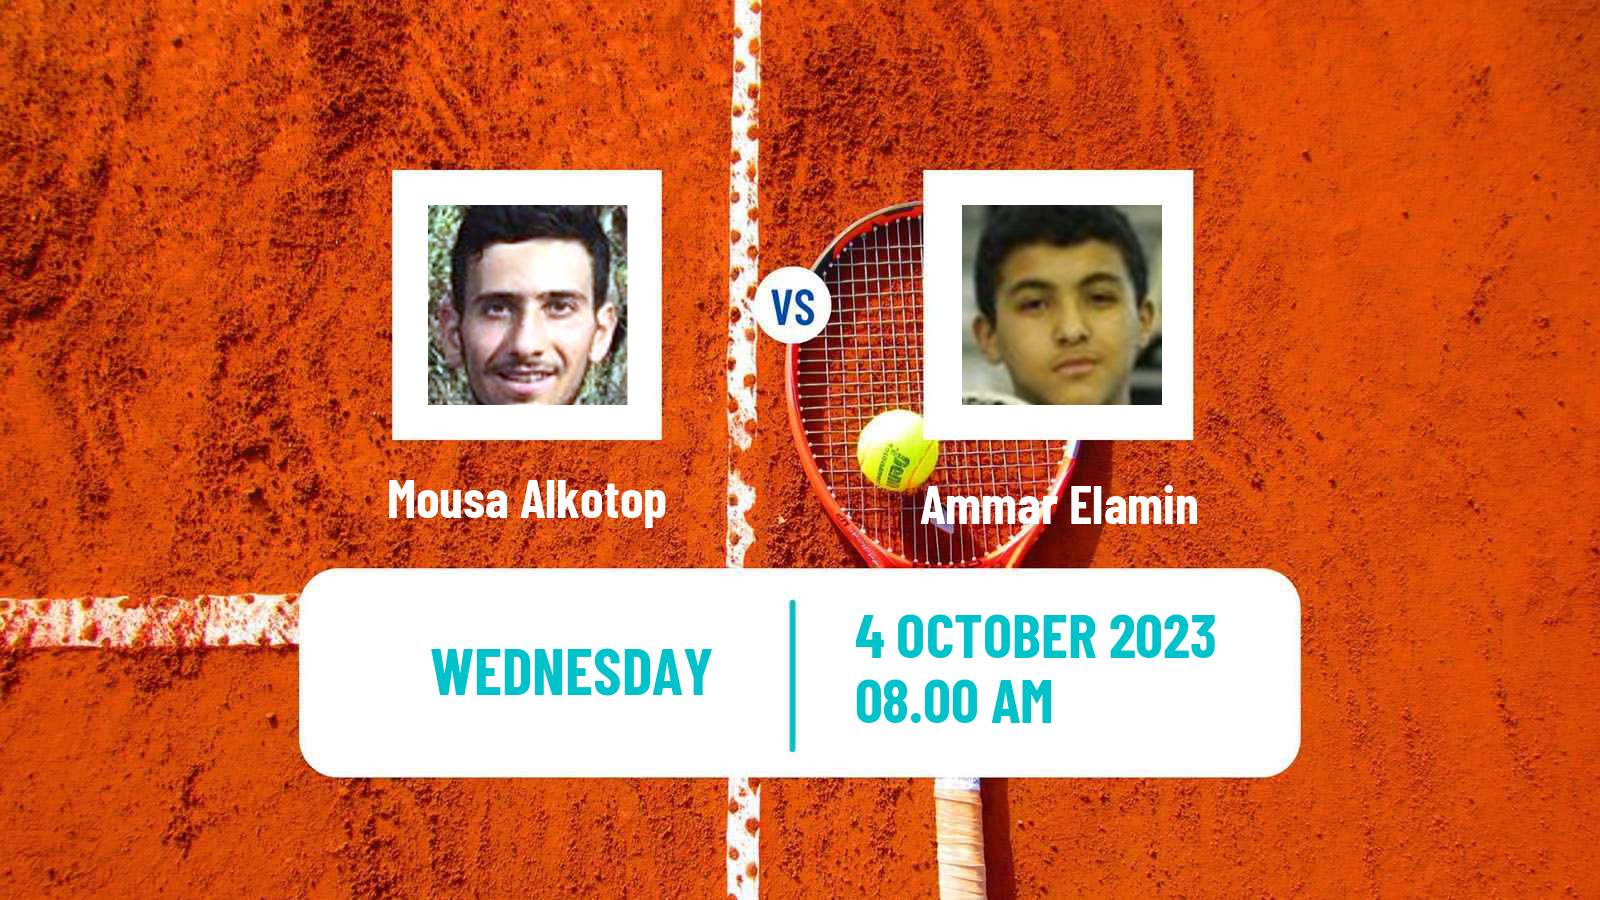 Tennis ITF M15 Doha 2 Men Mousa Alkotop - Ammar Elamin